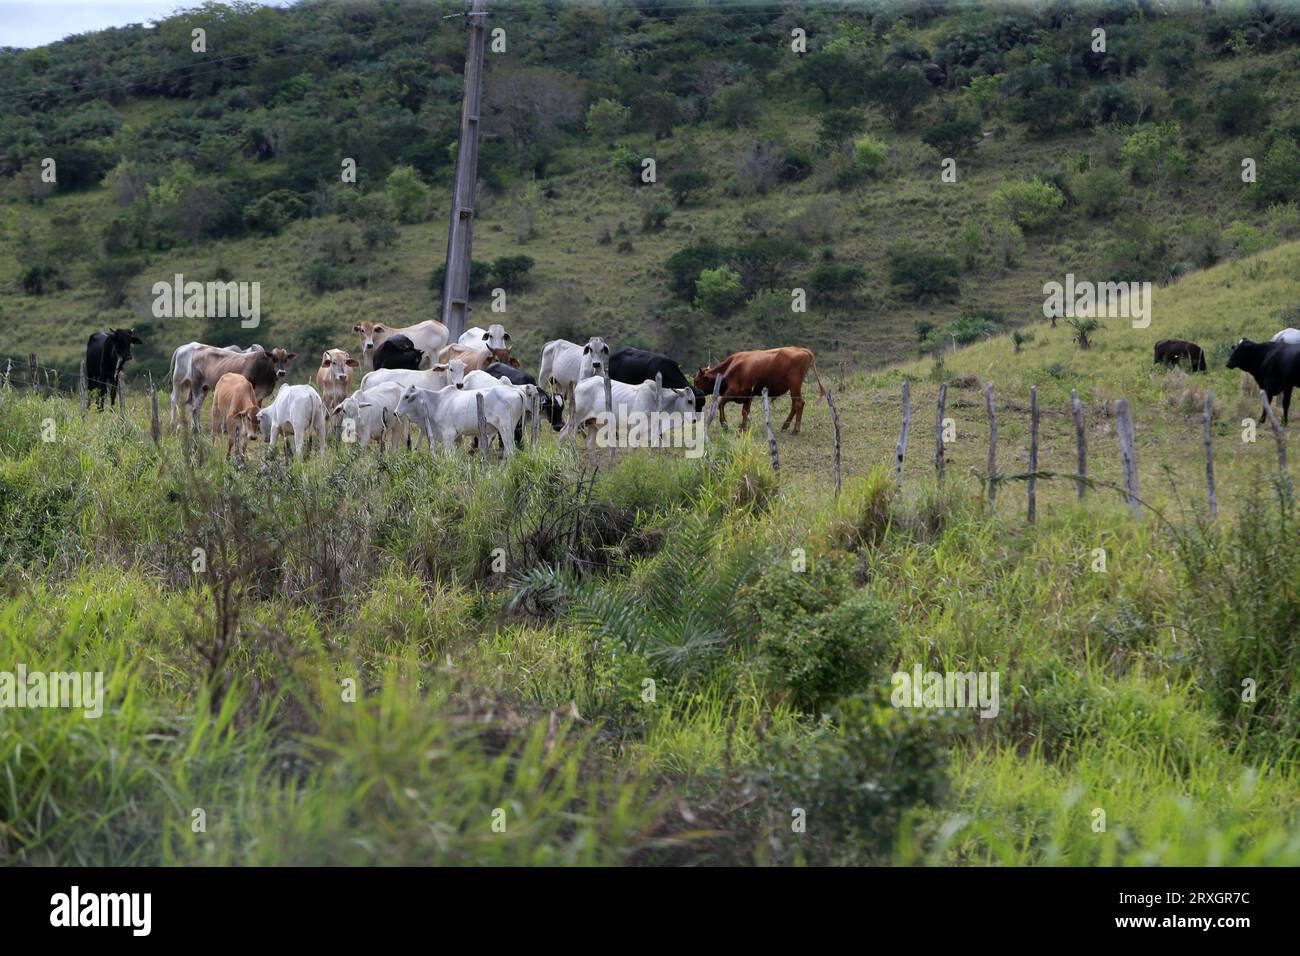 feira de santana, bahia, brasile - 4 settembre 2022: Allevamento di bestiame in un'area del bioma caatinga nel nord-est del Brasile. Foto Stock